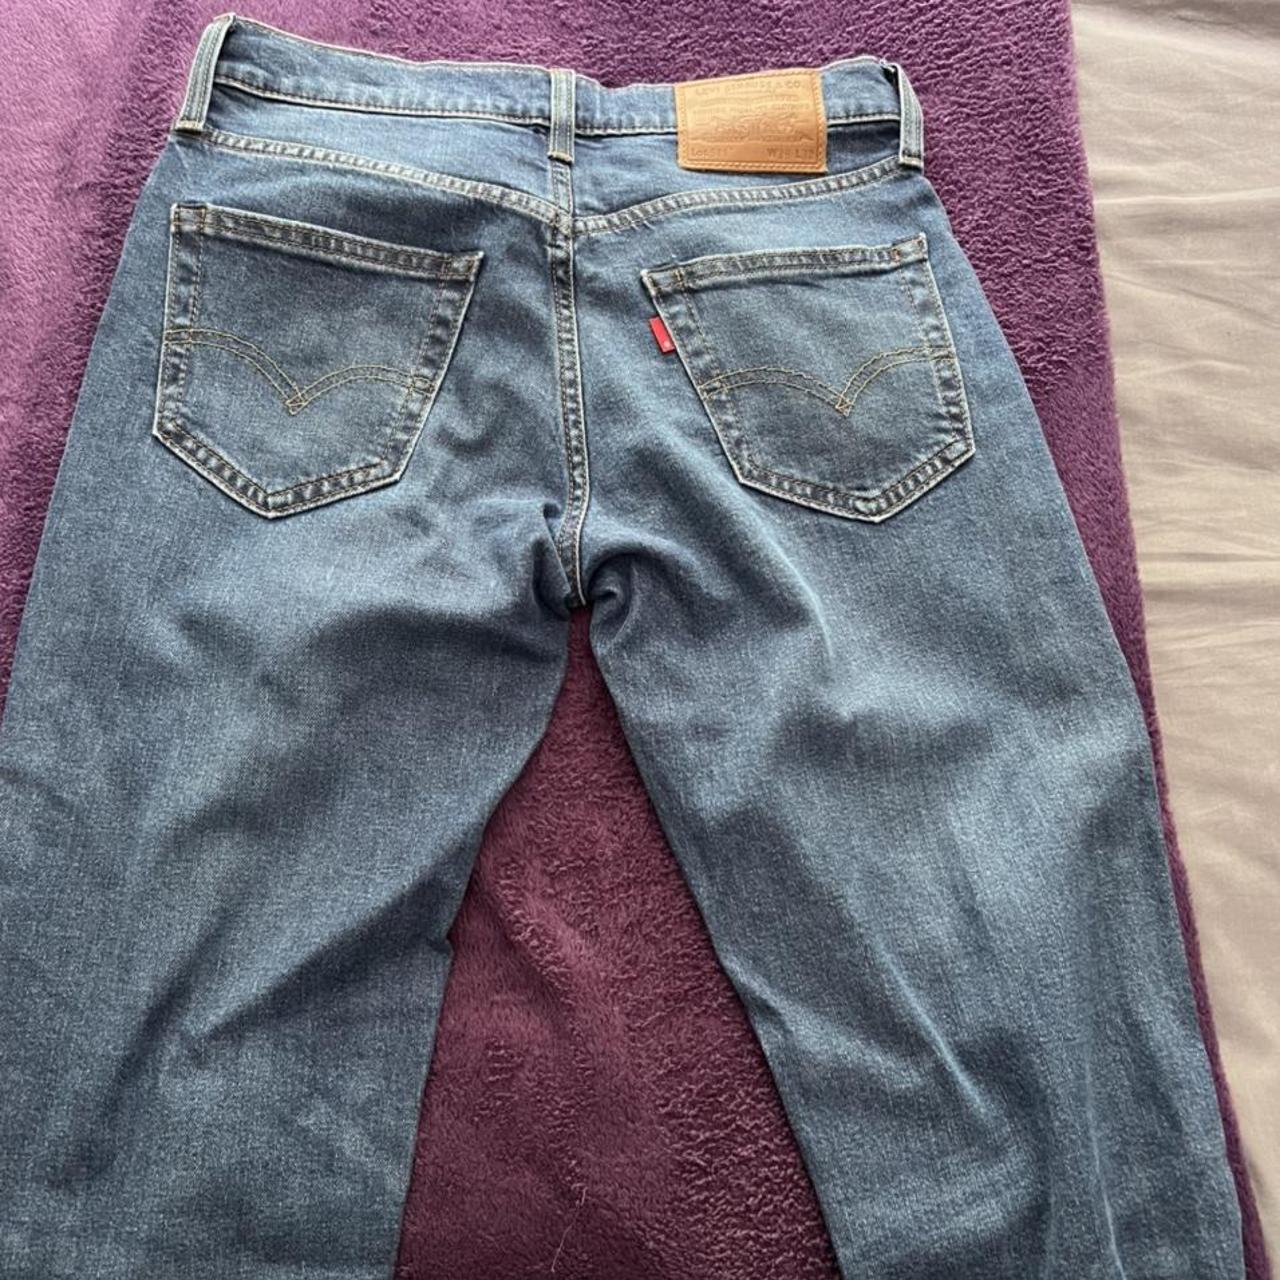 Levi 511 Jeans - W29 L32 - Slim Fit - Blue denim... - Depop